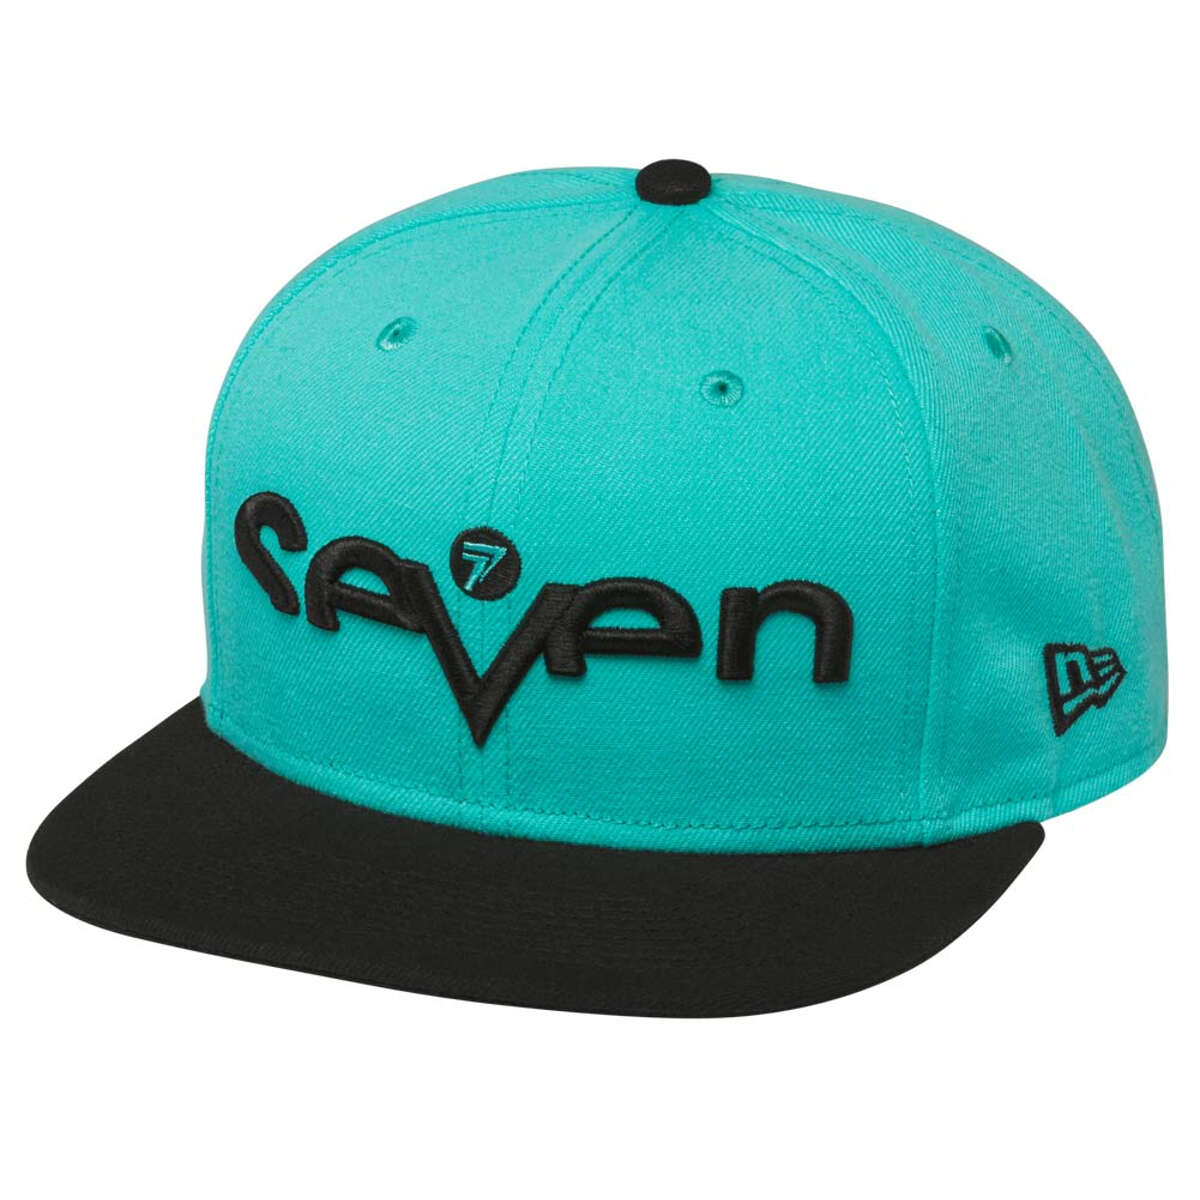 Seven MX Snapback Cap Brand Aqua